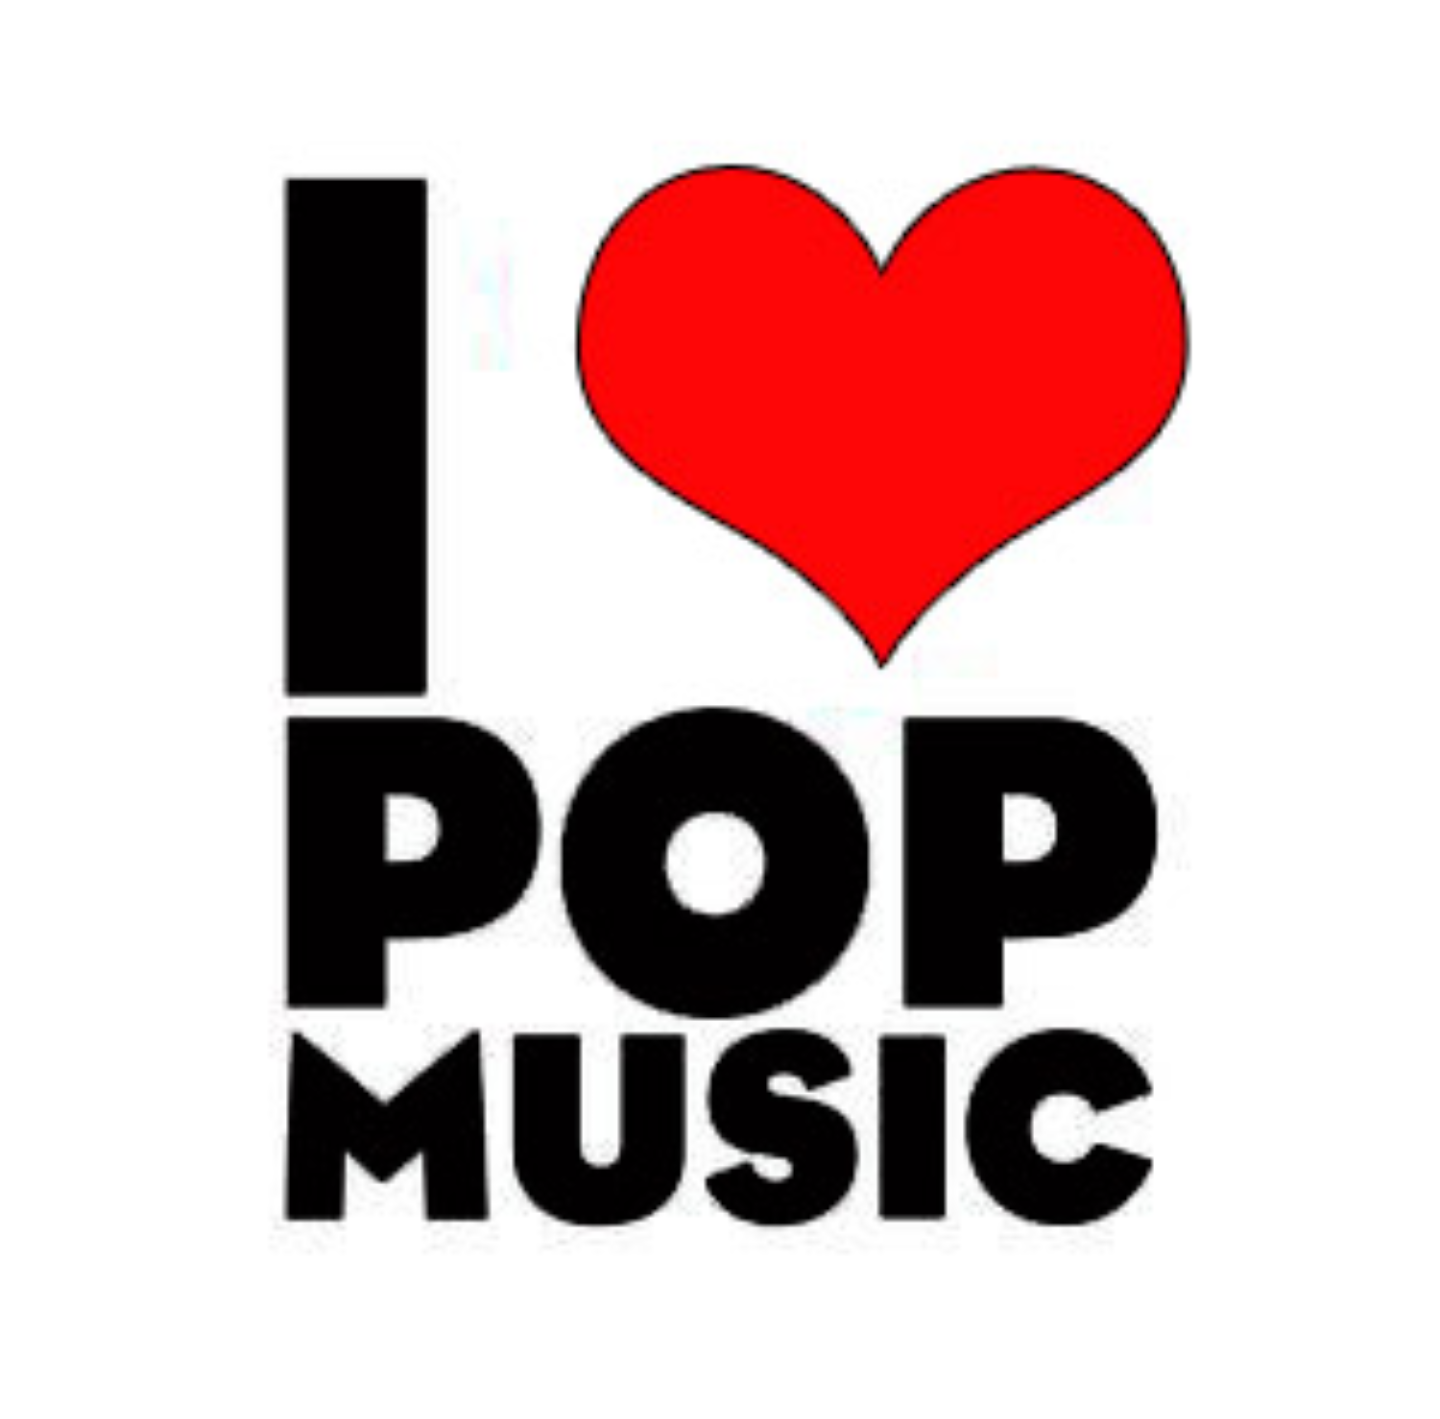 Best pop music. Поп Мьюзик. Поп стиль музыки. Pop Music картинки. Картинки на тему поп музыка.